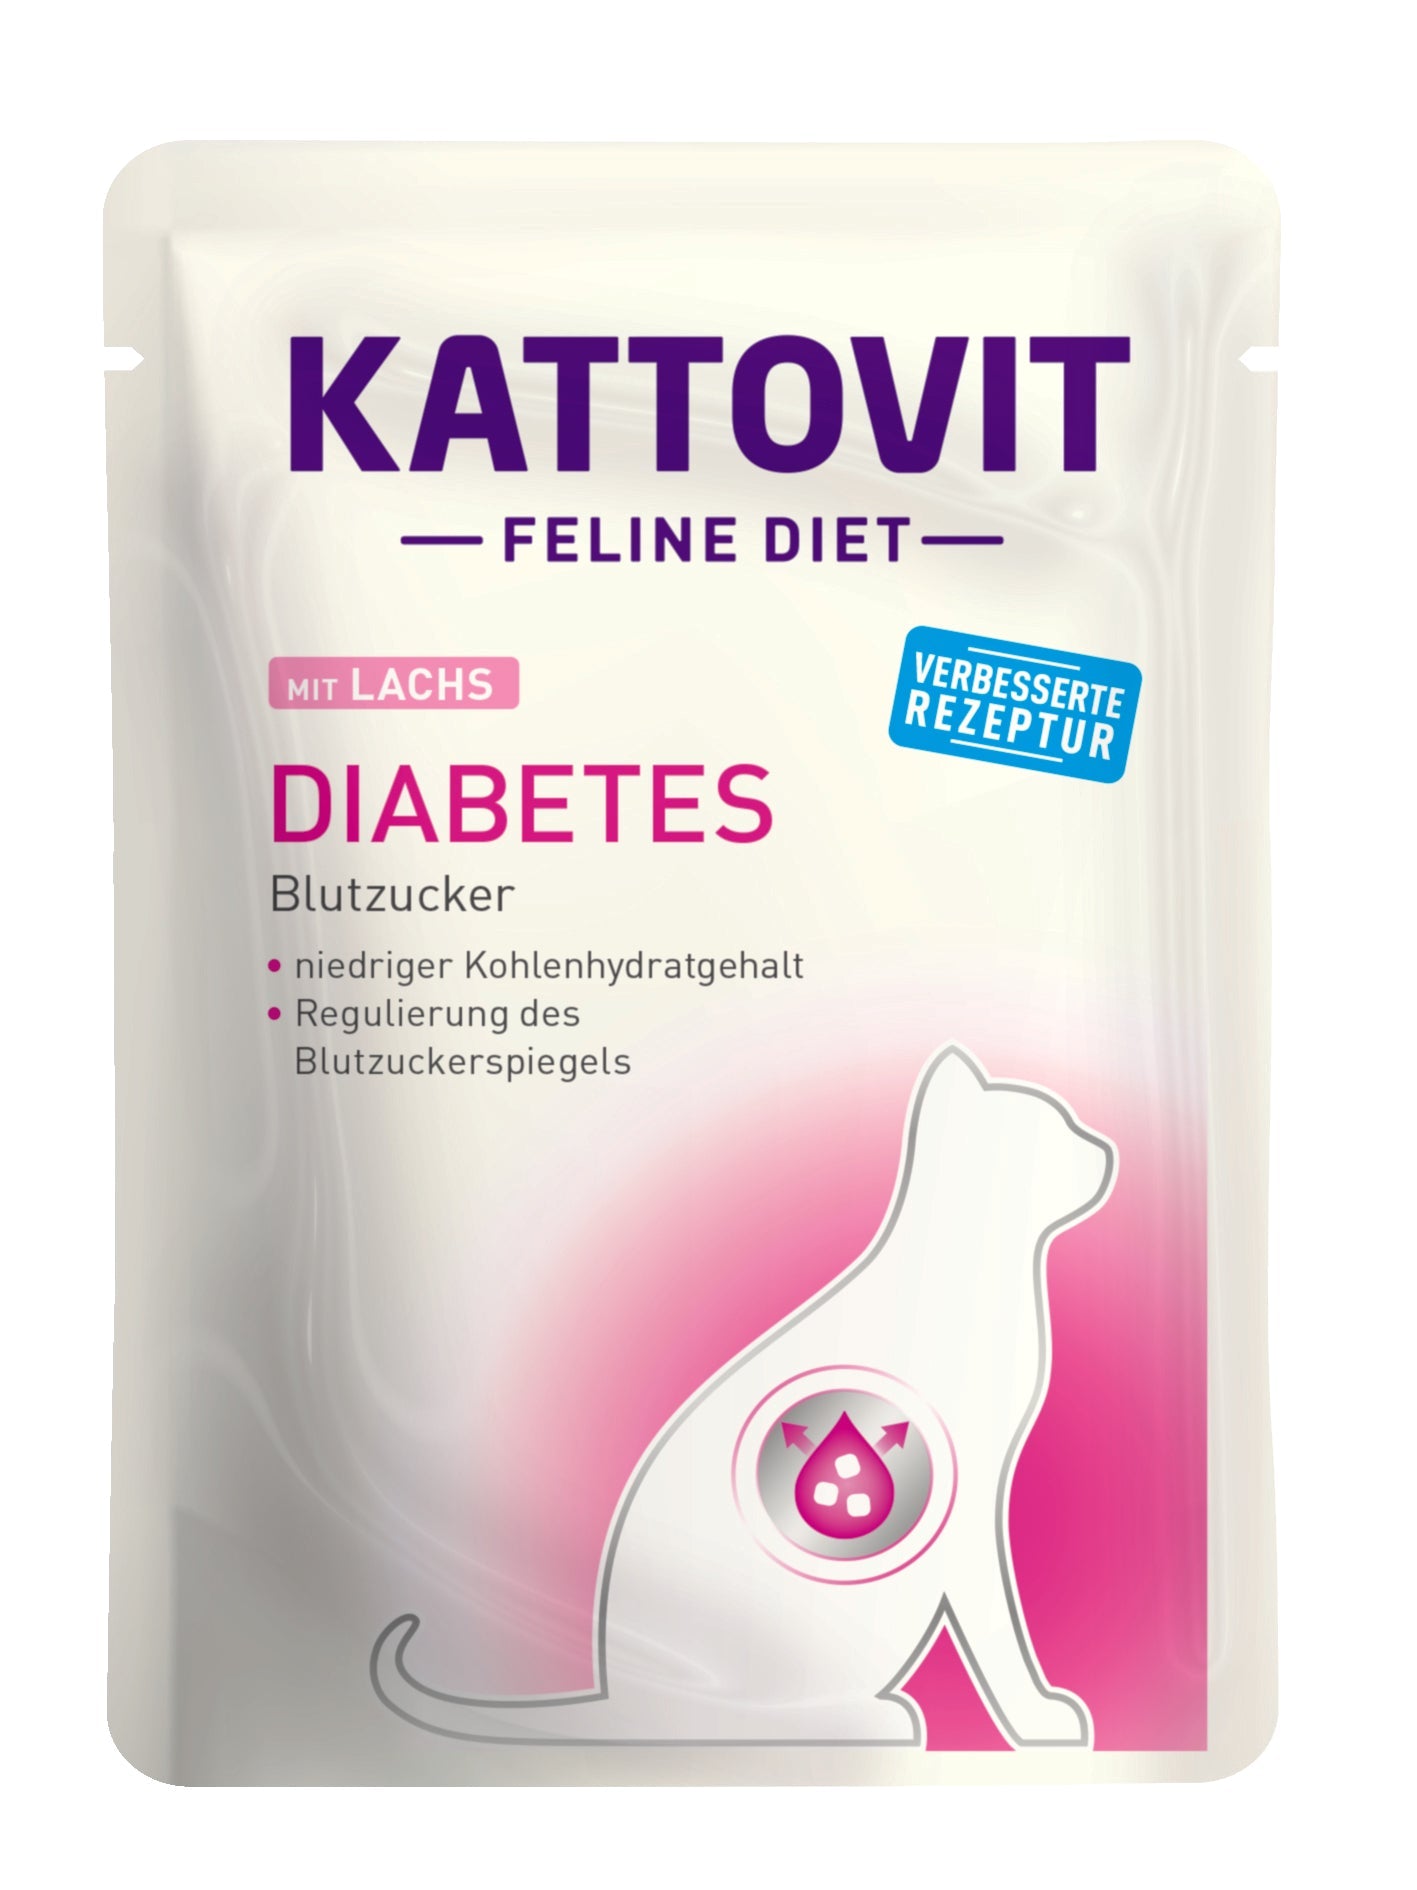 Kattovit Feline Diet Diabetes (M-Rezeptur) - zoo.de